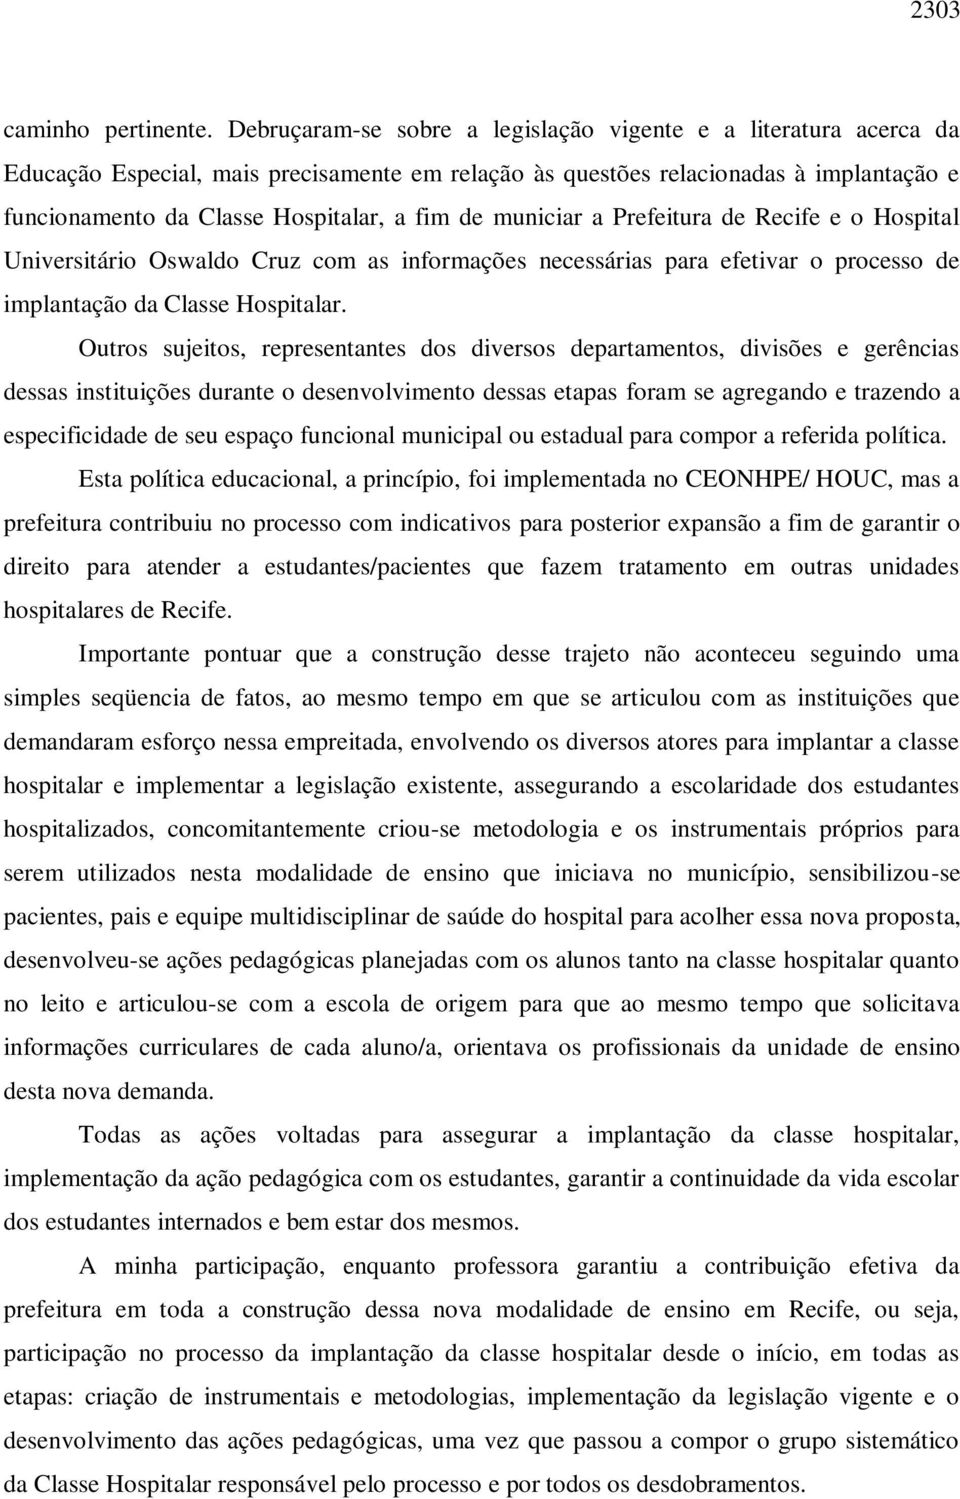 municiar a Prefeitura de Recife e o Hospital Universitário Oswaldo Cruz com as informações necessárias para efetivar o processo de implantação da Classe Hospitalar.